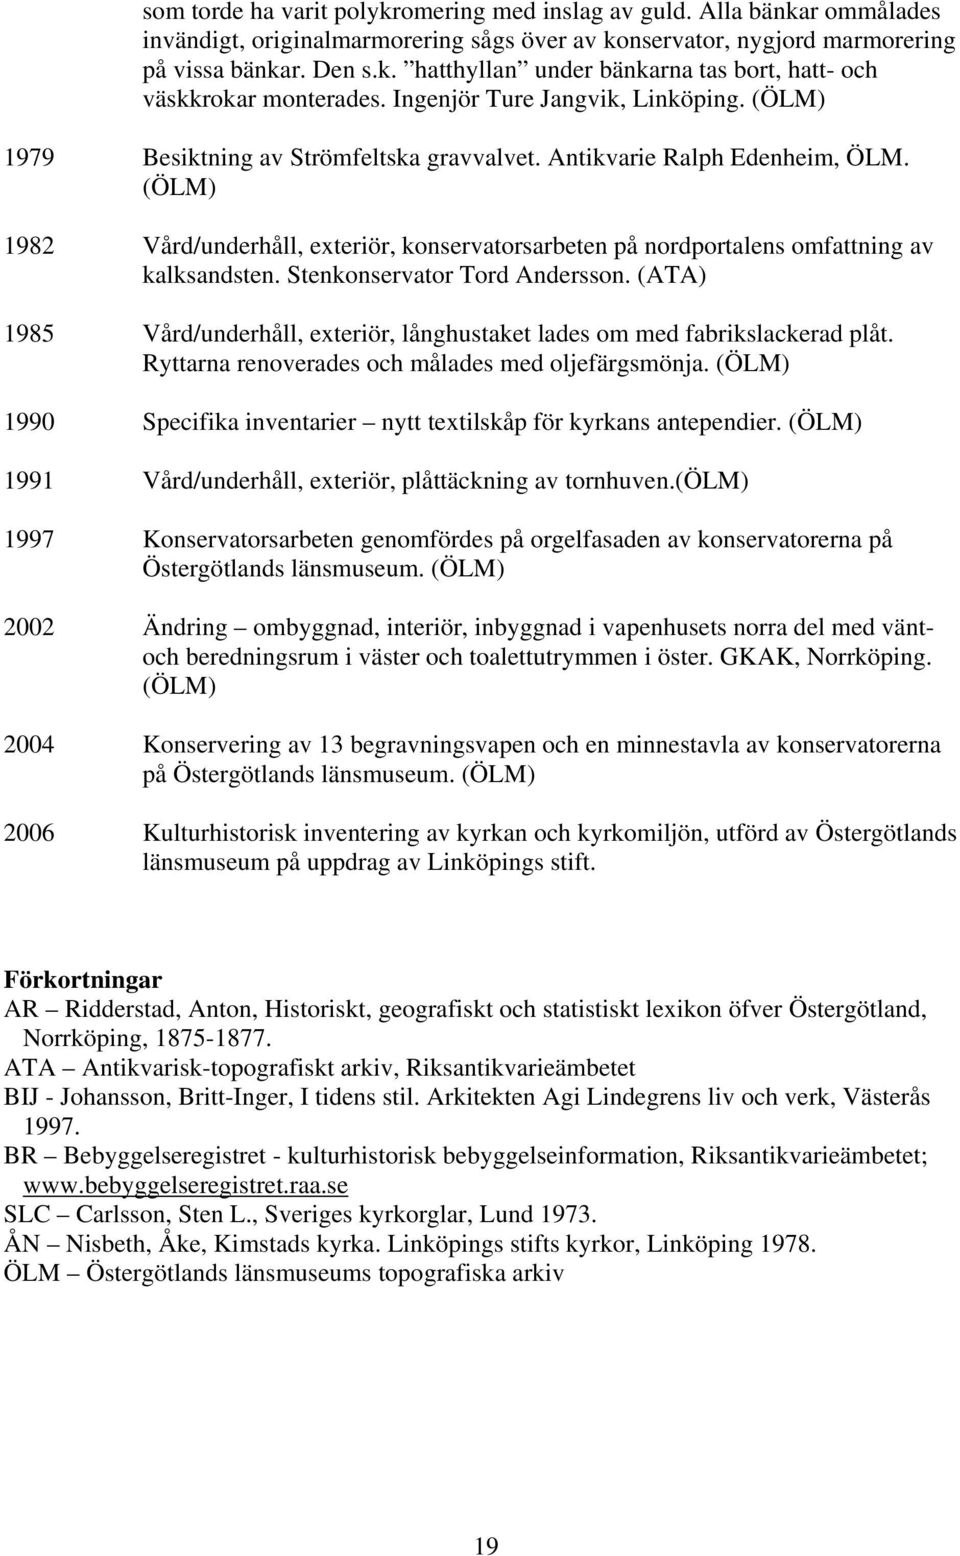 (ÖLM) 1982 Vård/underhåll, exteriör, konservatorsarbeten på nordportalens omfattning av kalksandsten. Stenkonservator Tord Andersson.